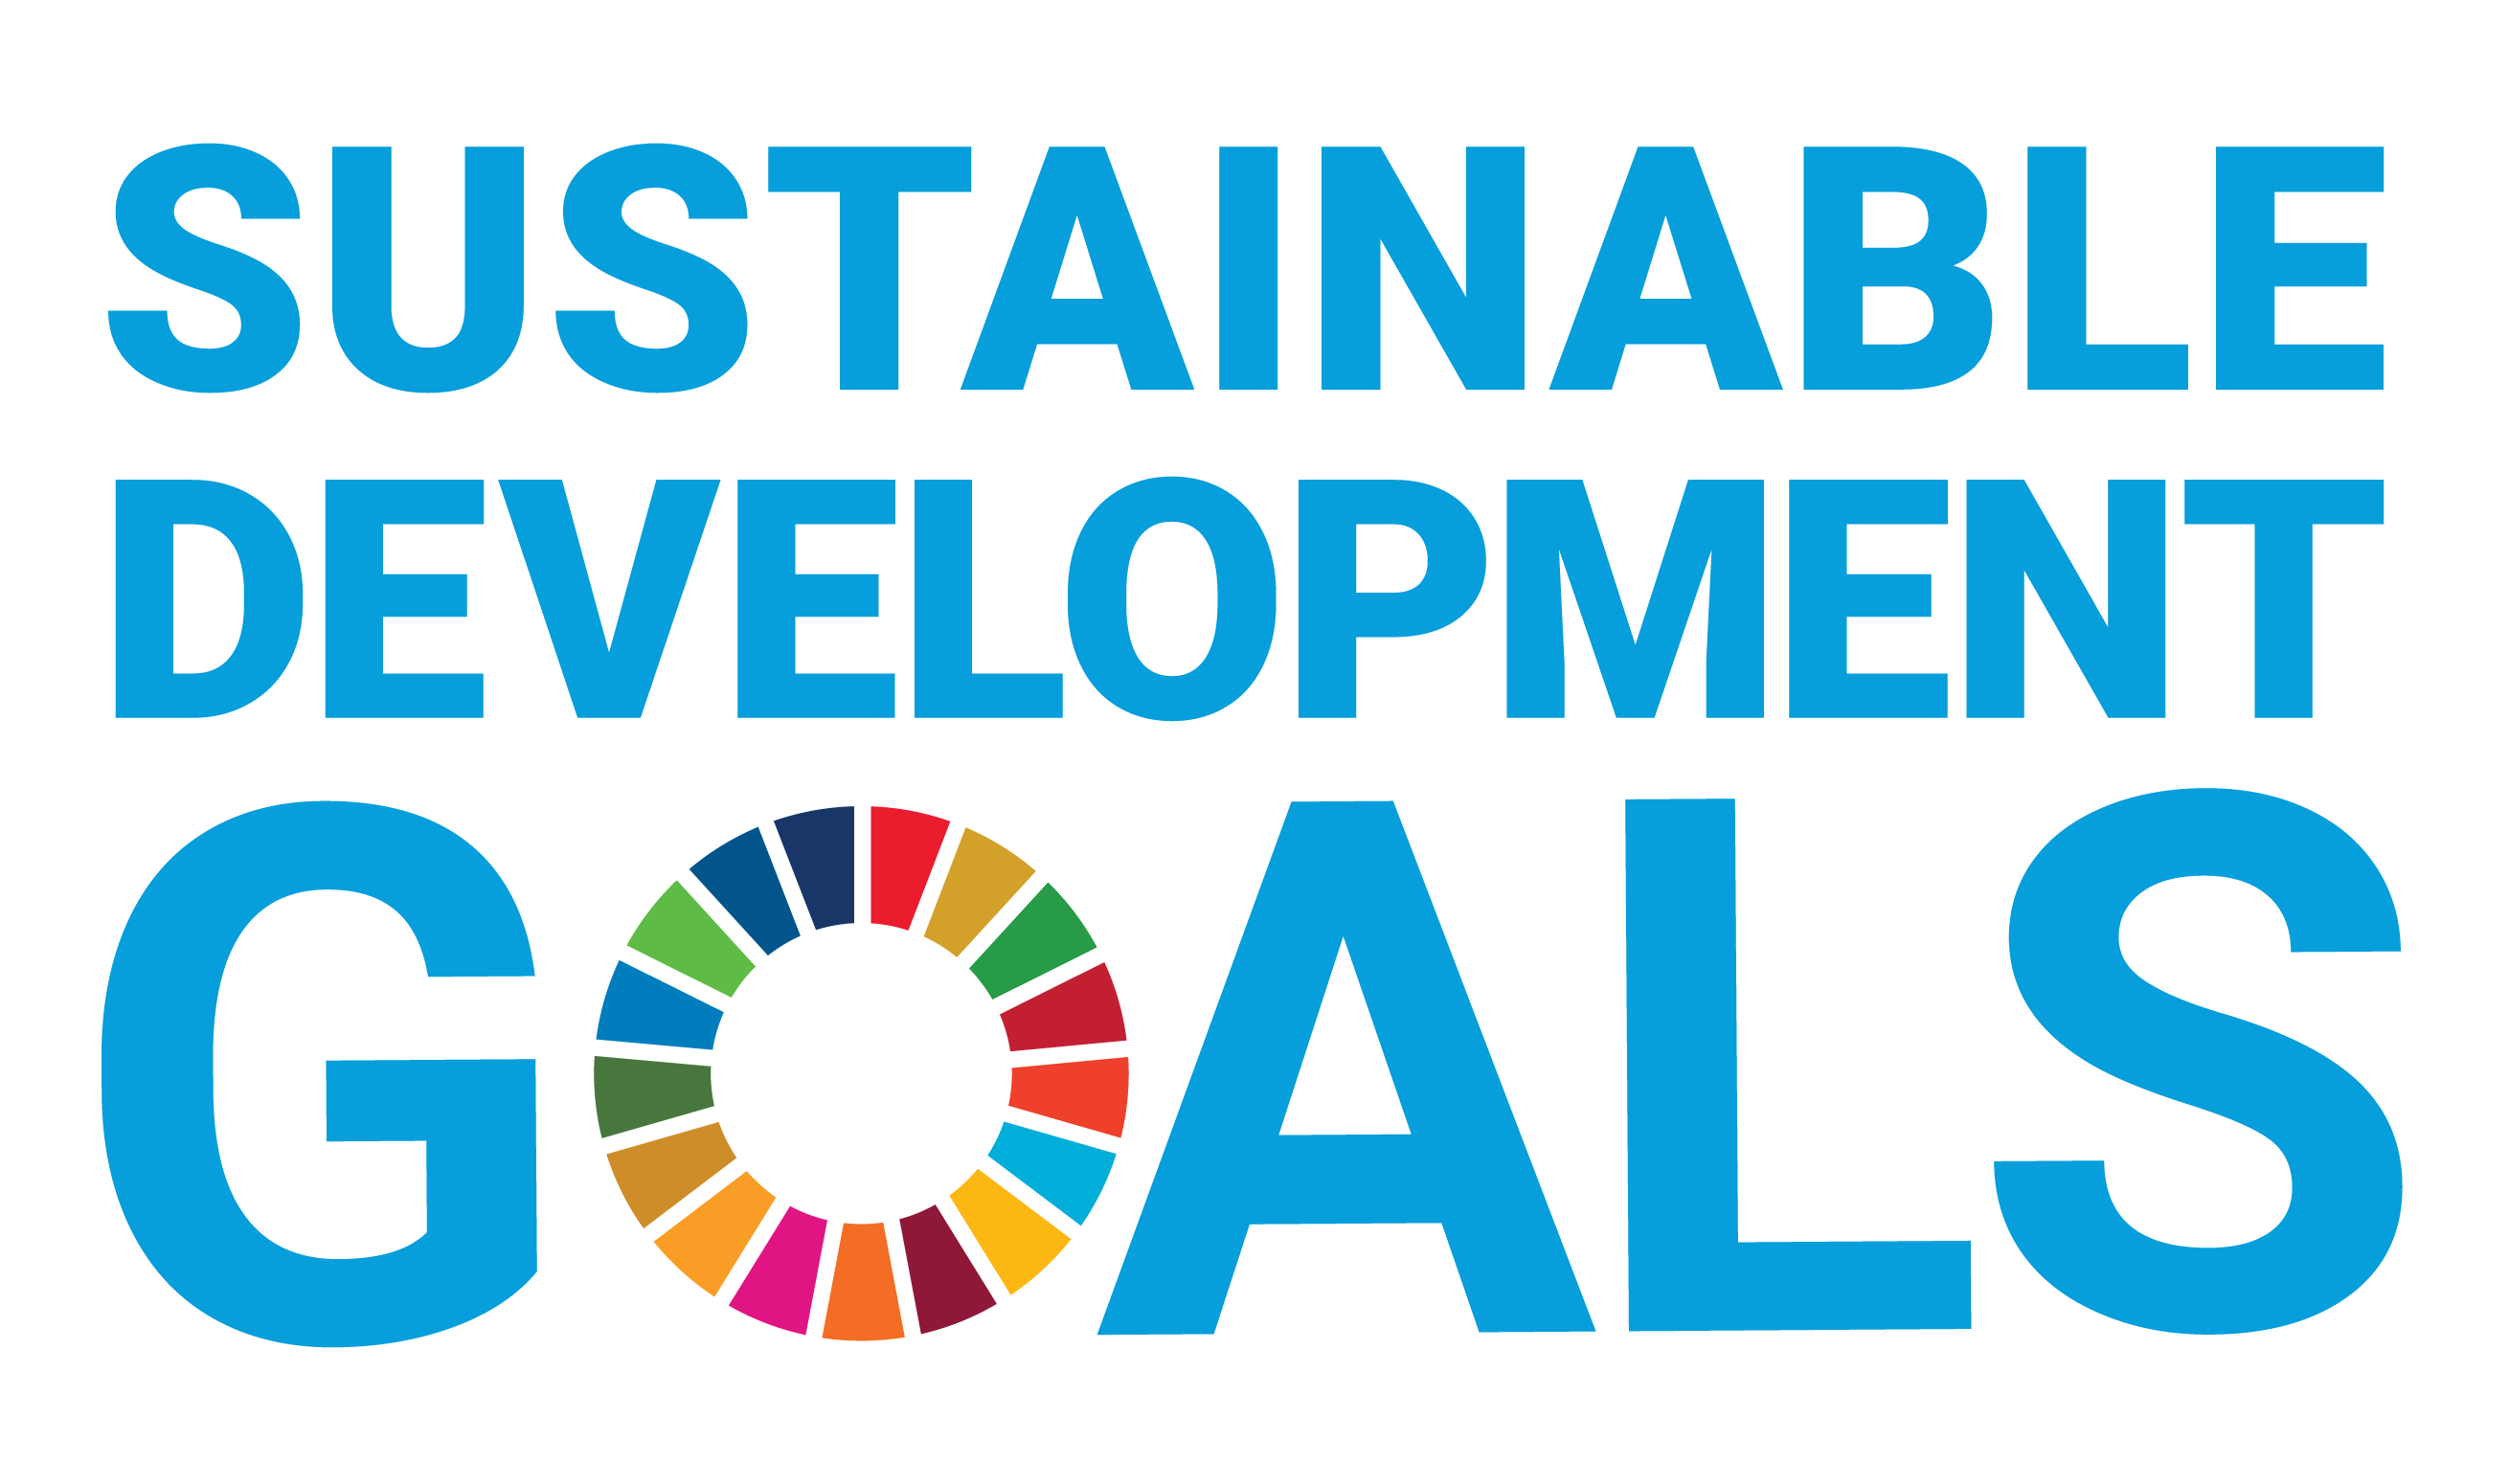 Understanding the Sustainable Development Goals